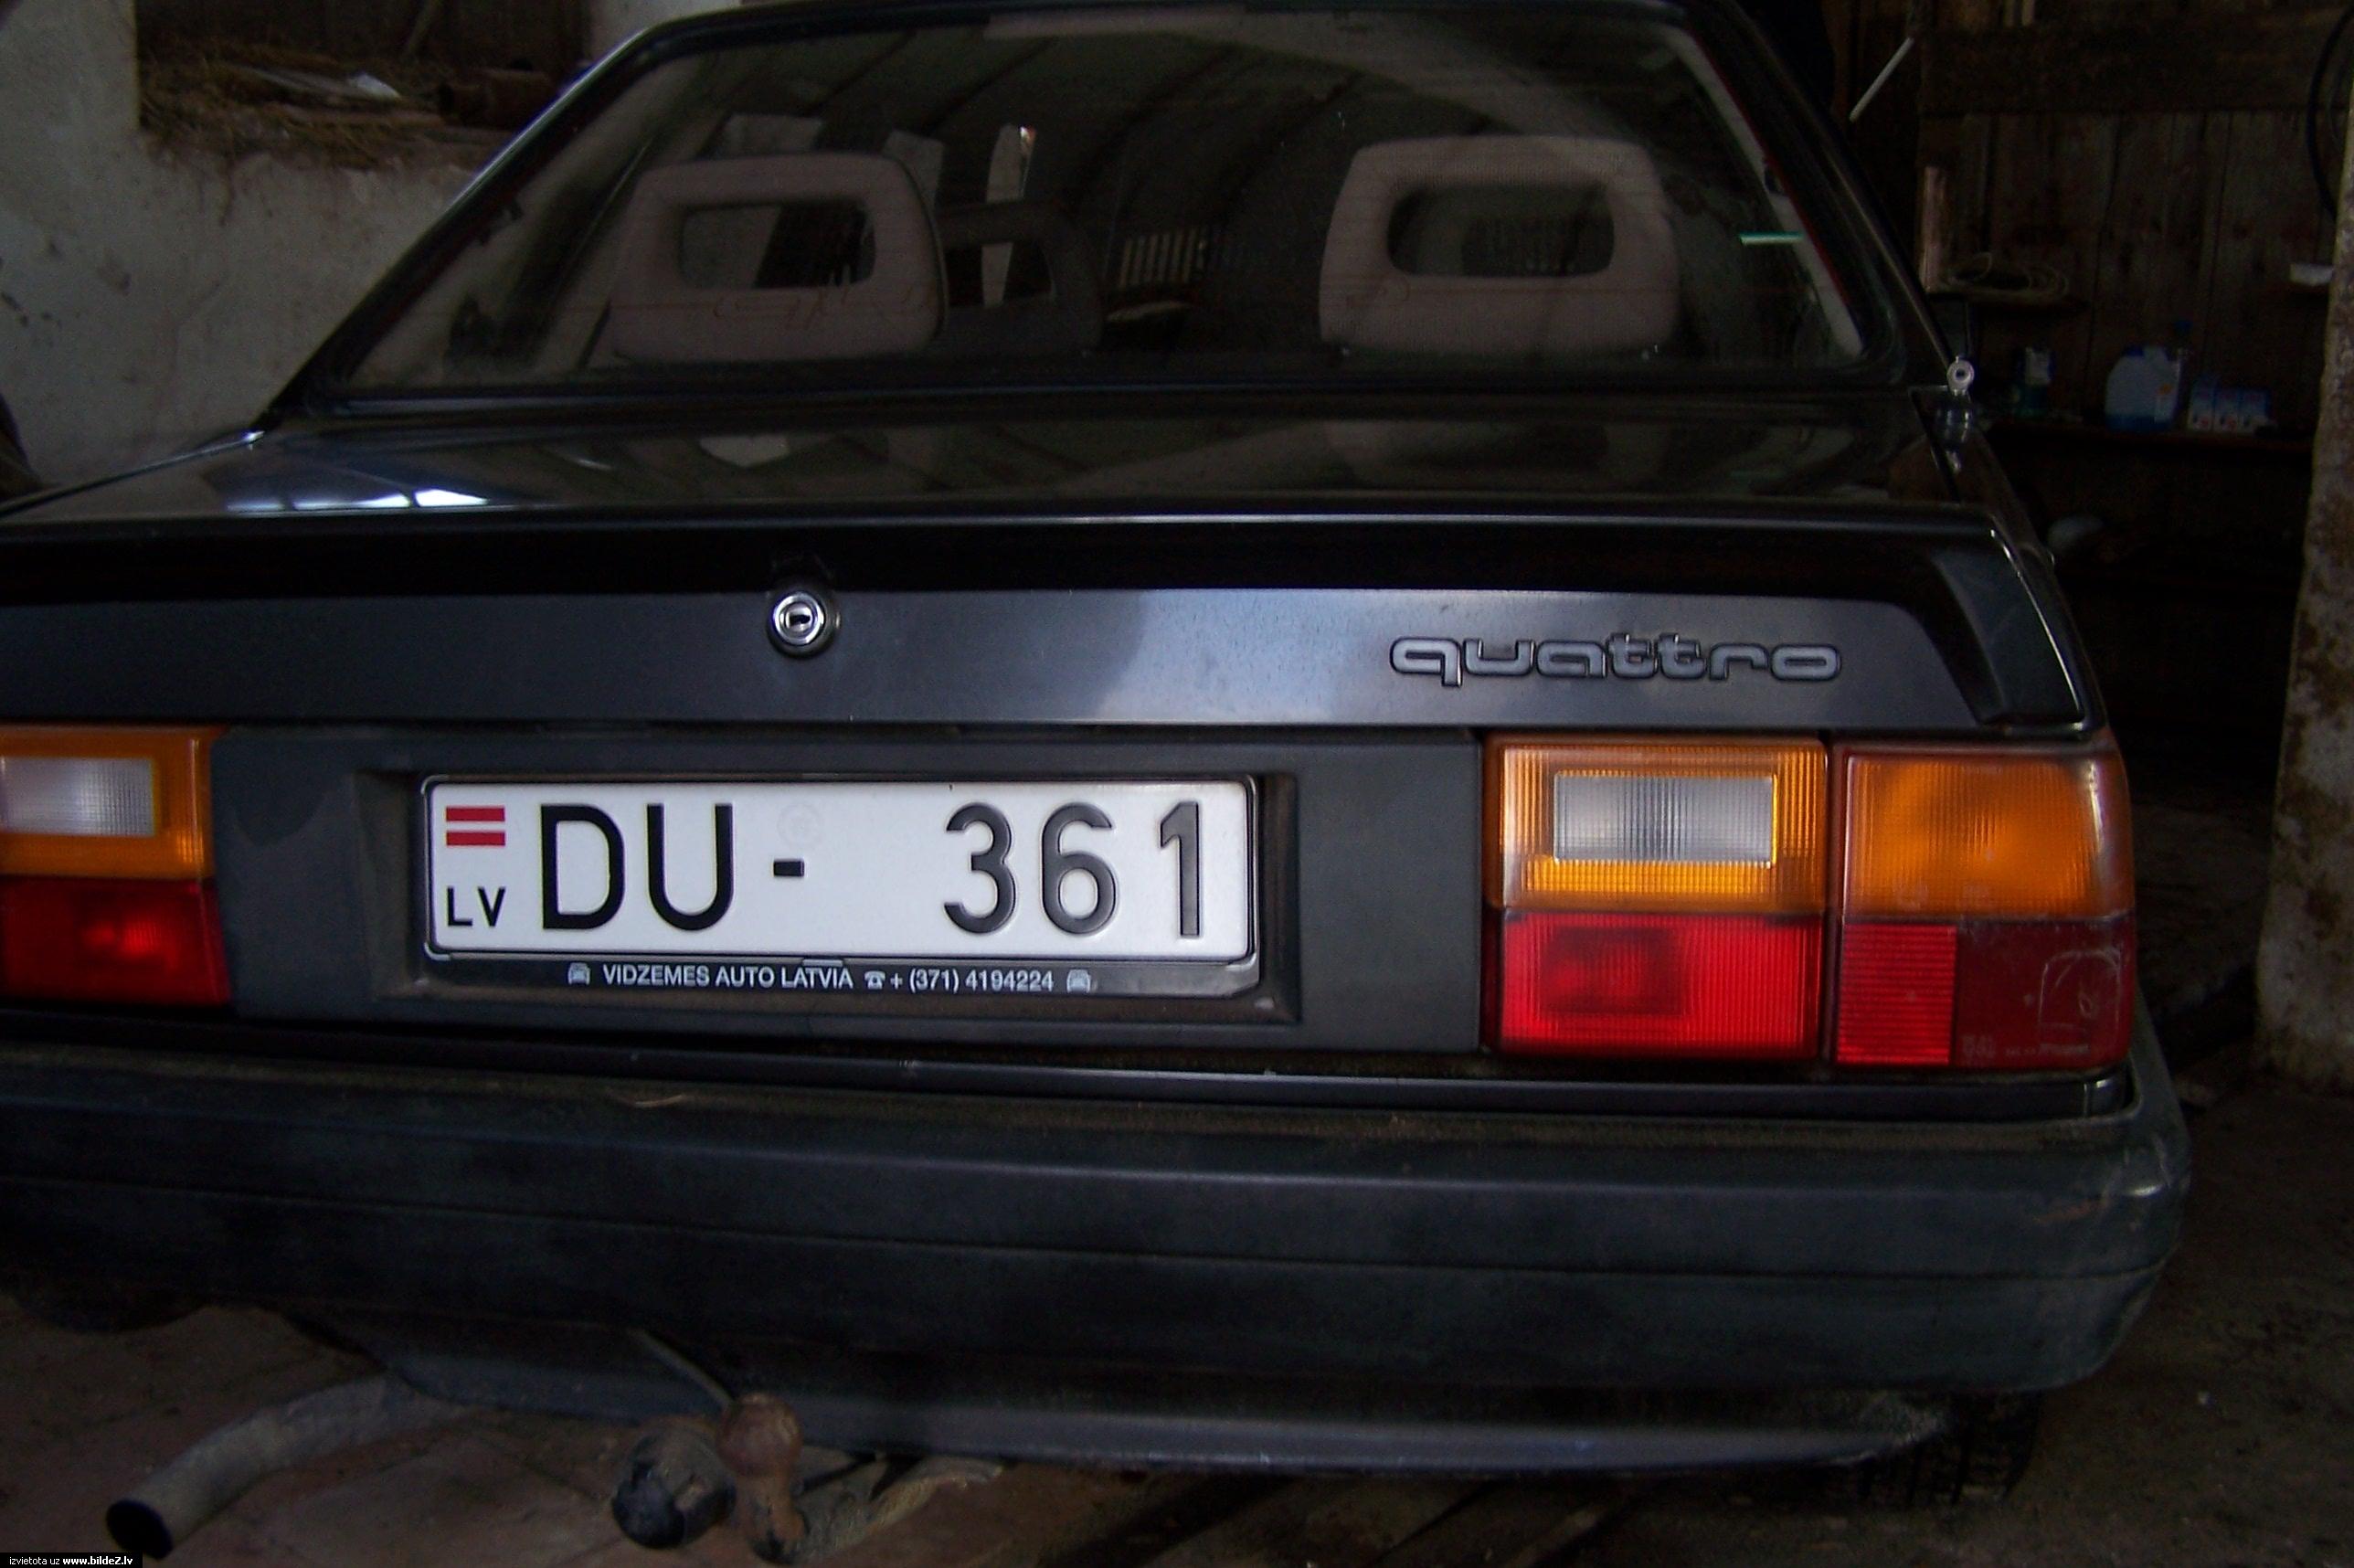 Audi 80 1.8 quattro